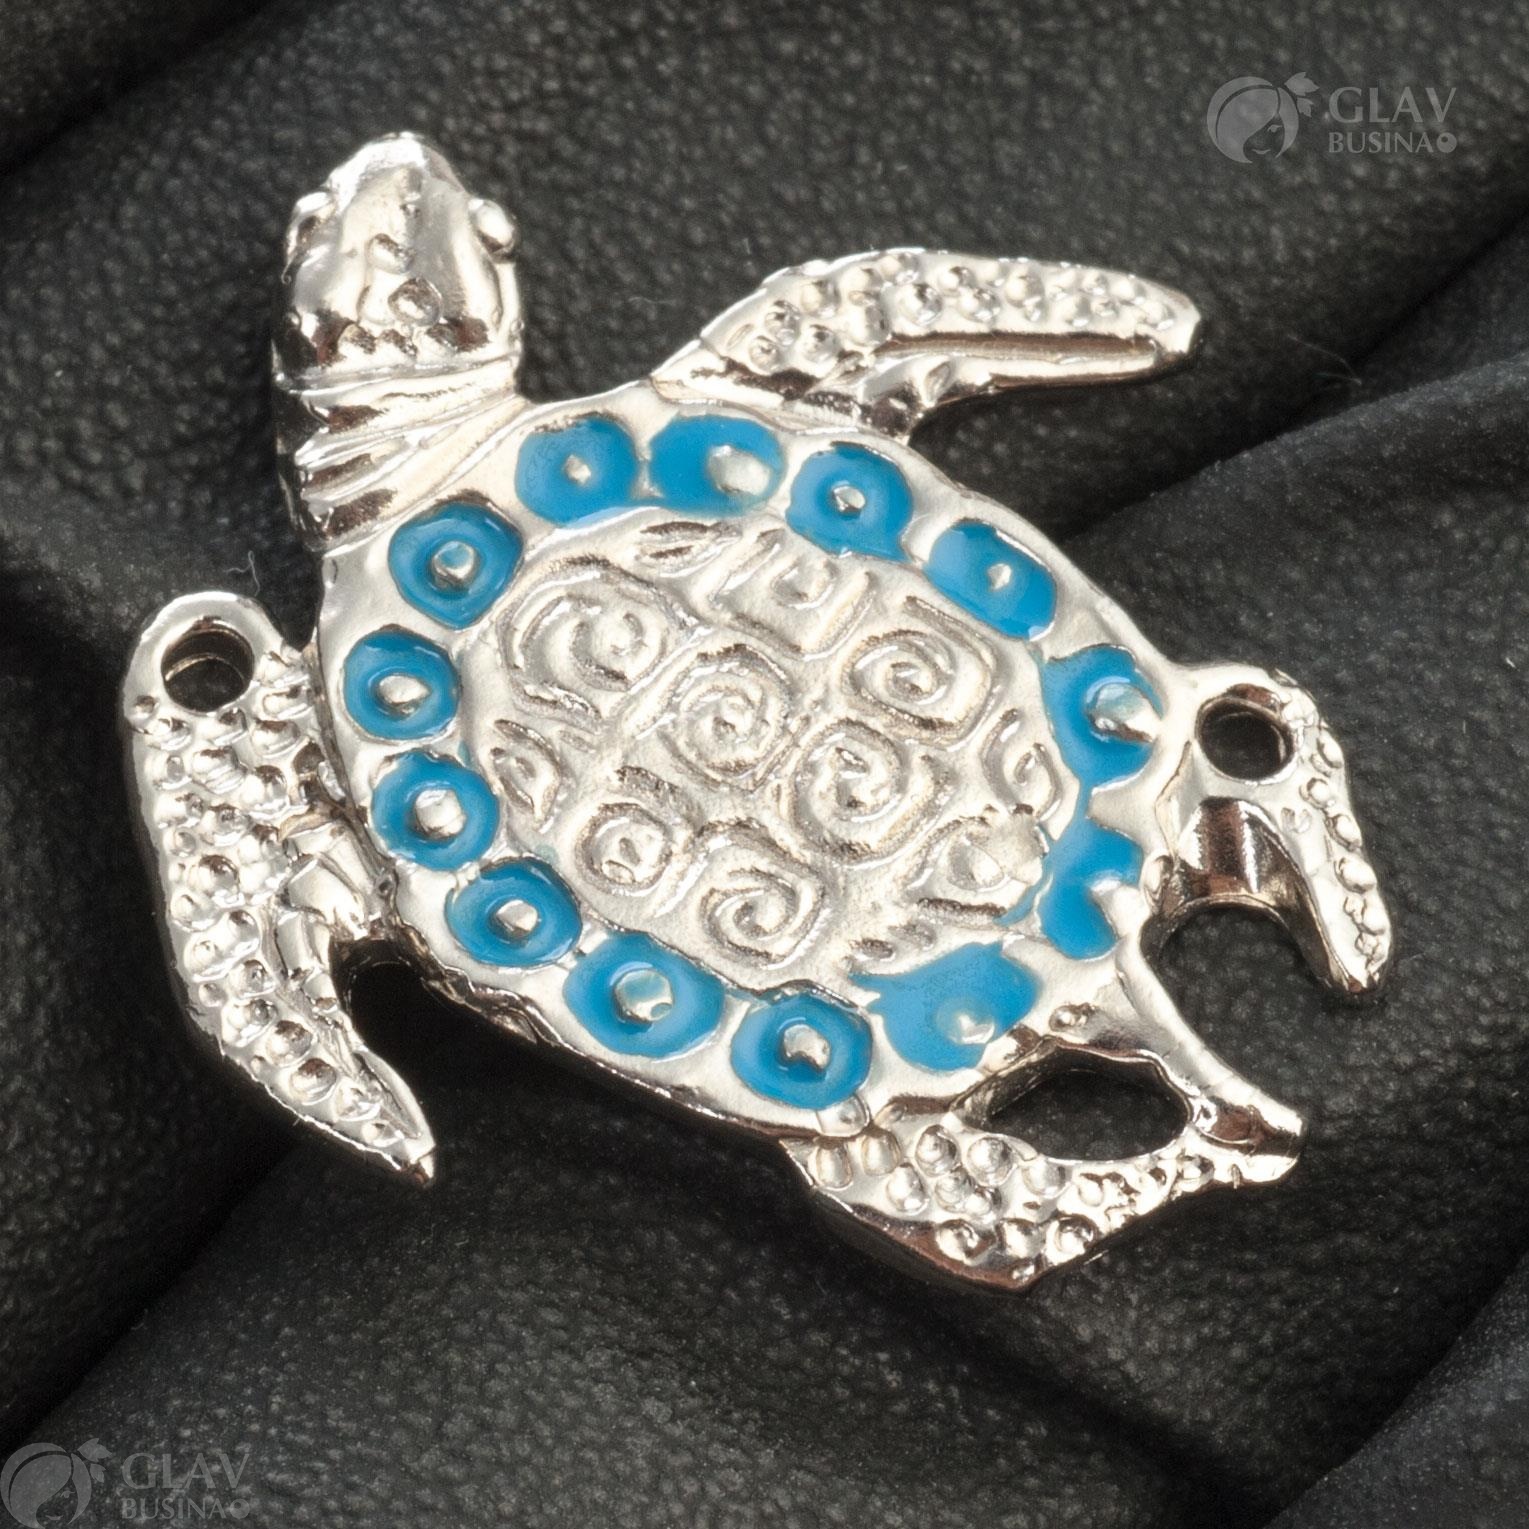 Латунная эмалевая подвеска-коннектор с изображением черепахи, цвет металла - платина, эмаль в нежном голубом оттенке. Размеры 25х23мм, отверстие для крепления - 1.3мм. Отличный выбор для украшений.